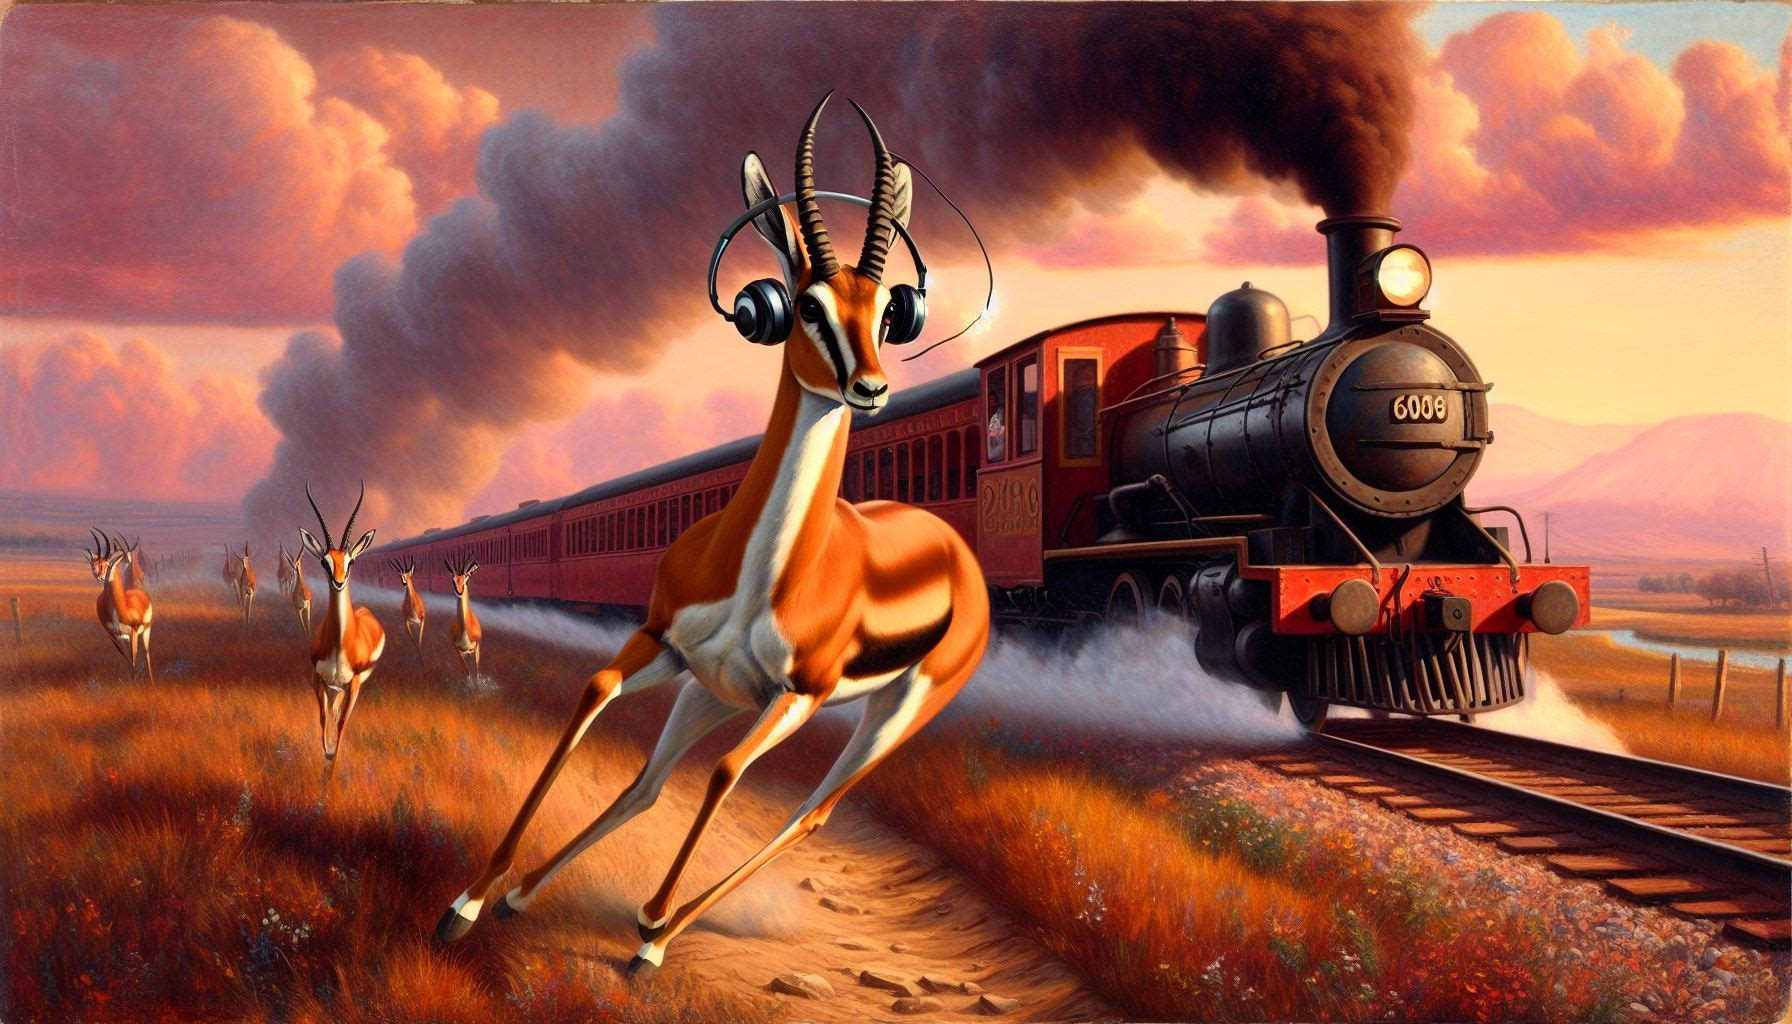 a gazelle wearing headphones racing alongside a train Romantic landscape hudson school